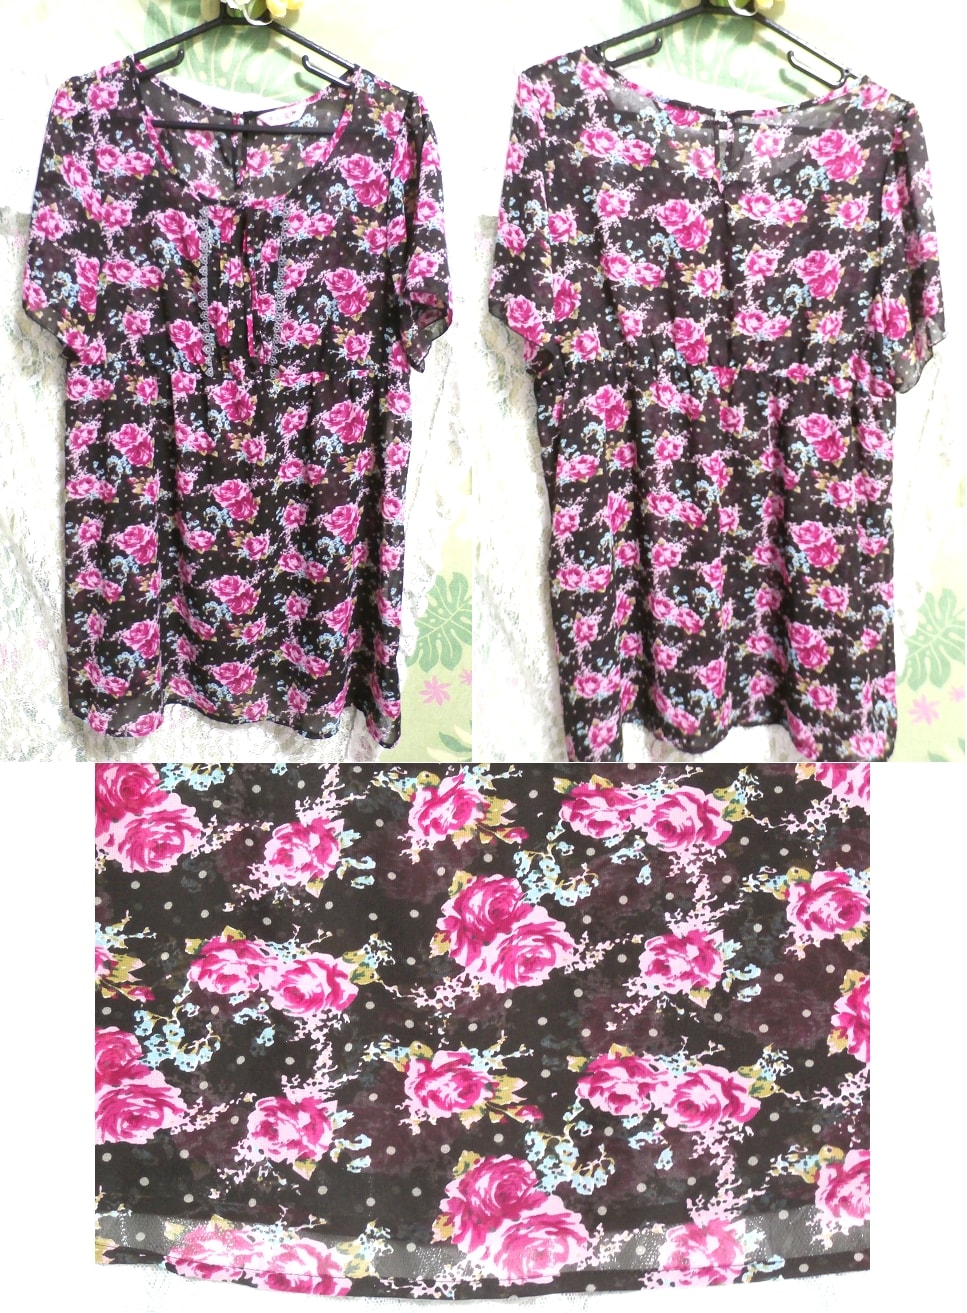 粉色和黑色玫瑰花卉图案睡衣睡袍束腰连衣裙, 外衣, 短袖, XL尺寸及以上